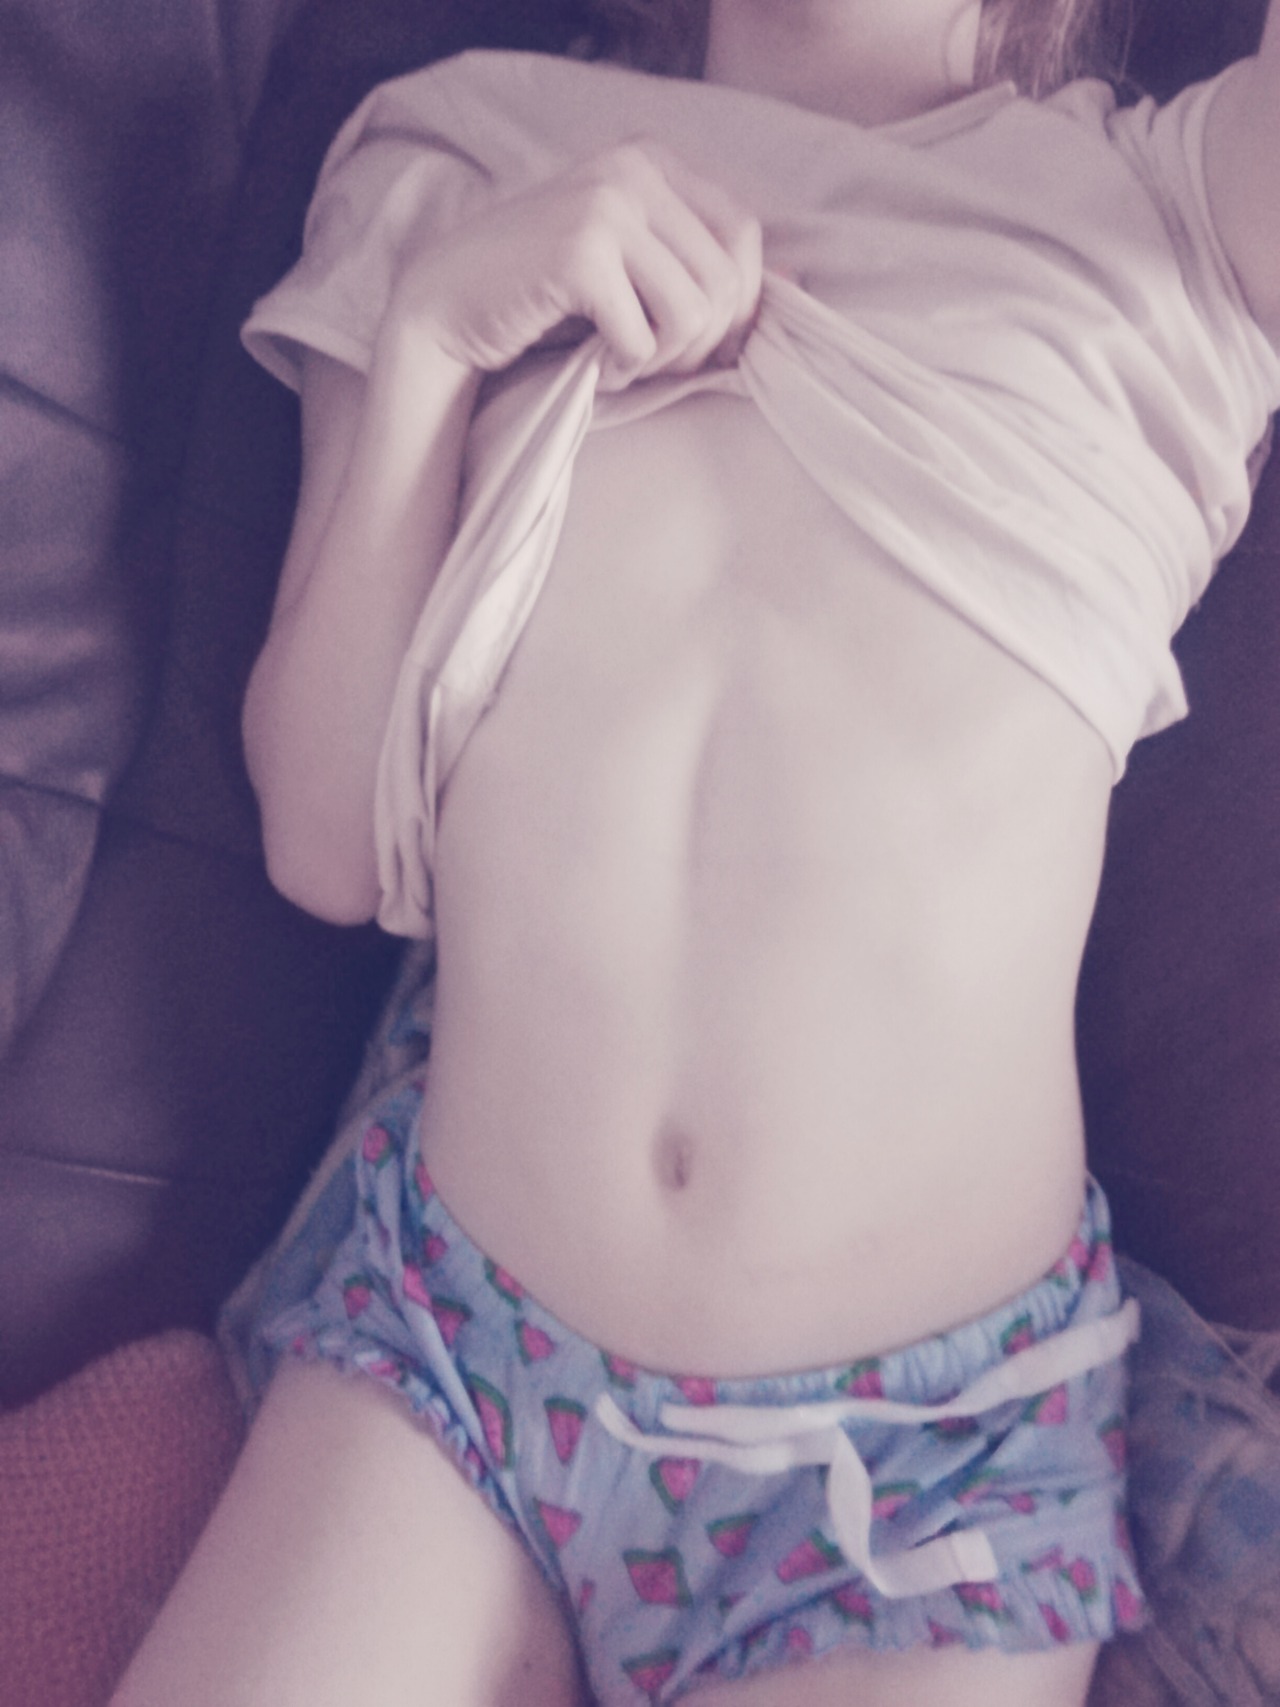 teen femboy nude tumblr